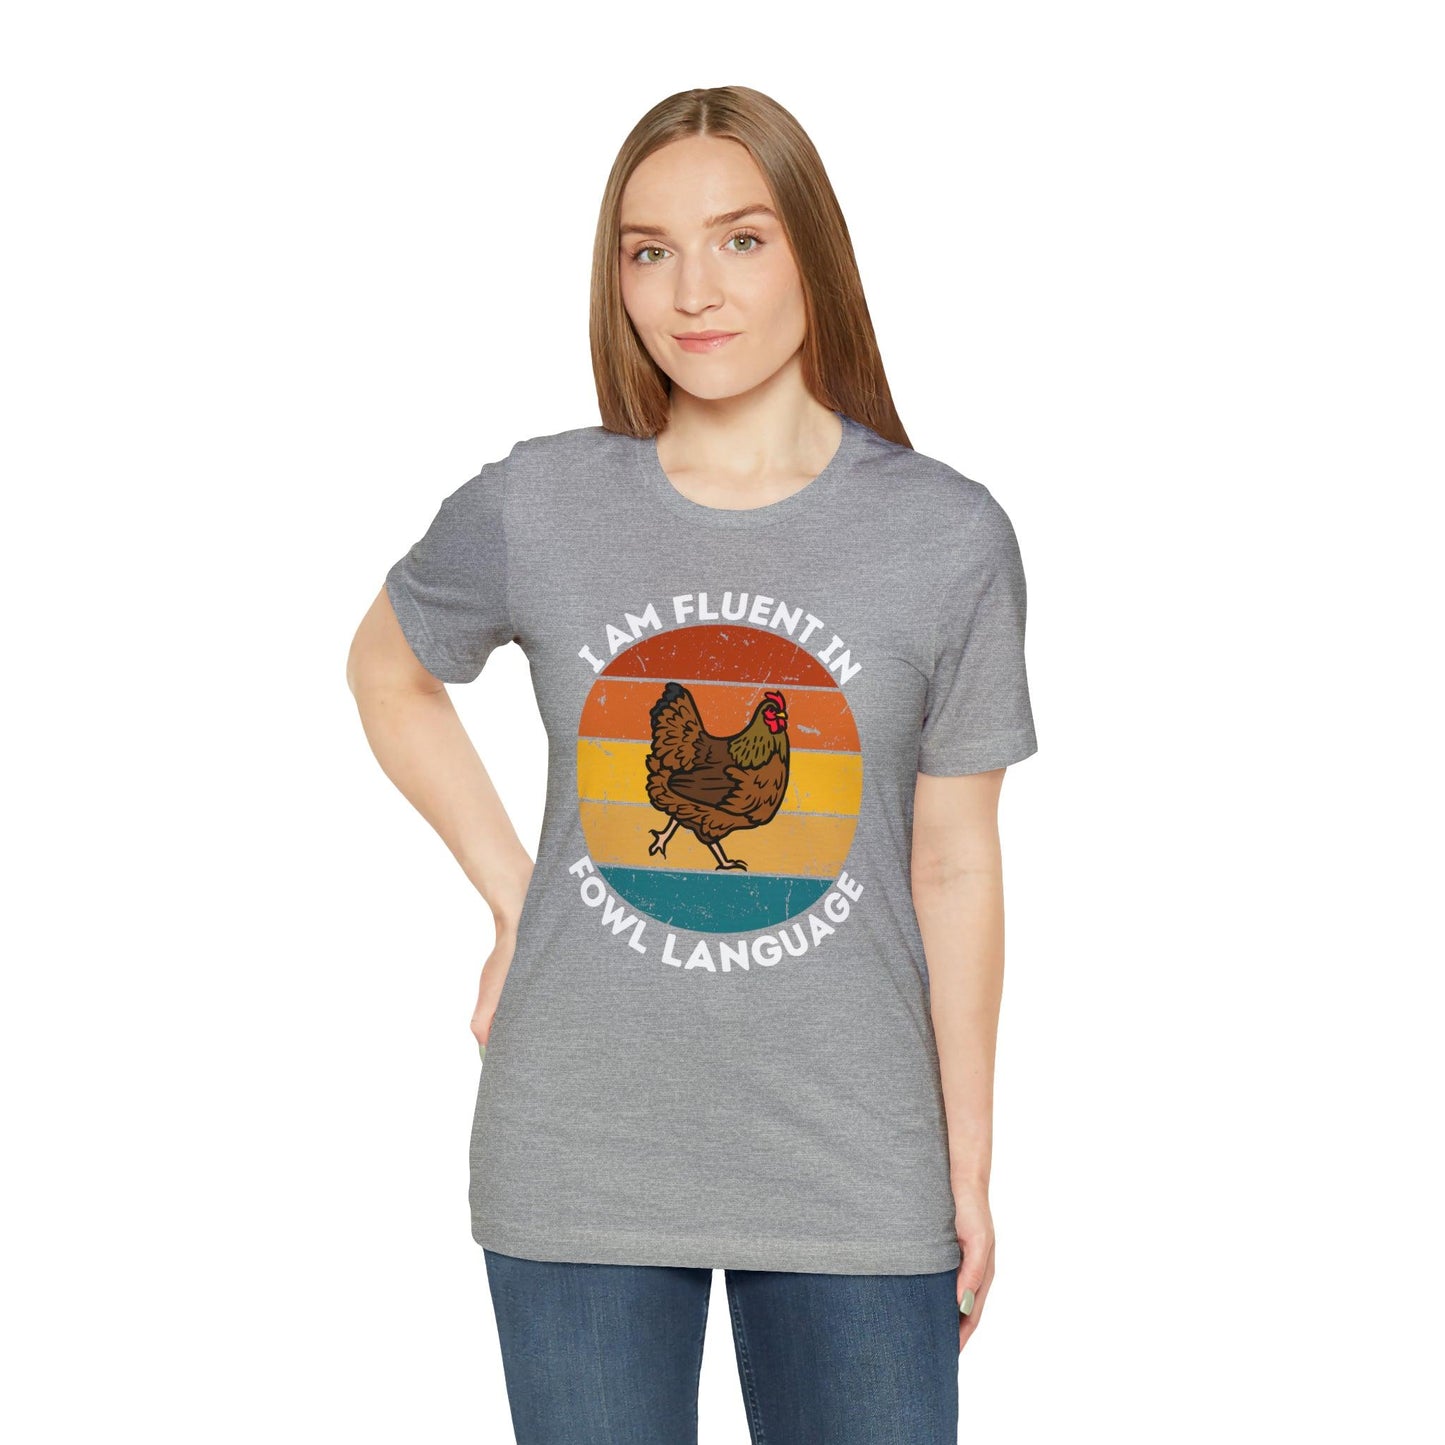 Cute Chicken Shirt Chicken Coop, Chicken Gifts, Chicken Farm, Funny Chicken Gift Chickens lover, Backyard Chickens, Farm Chicken Shirt